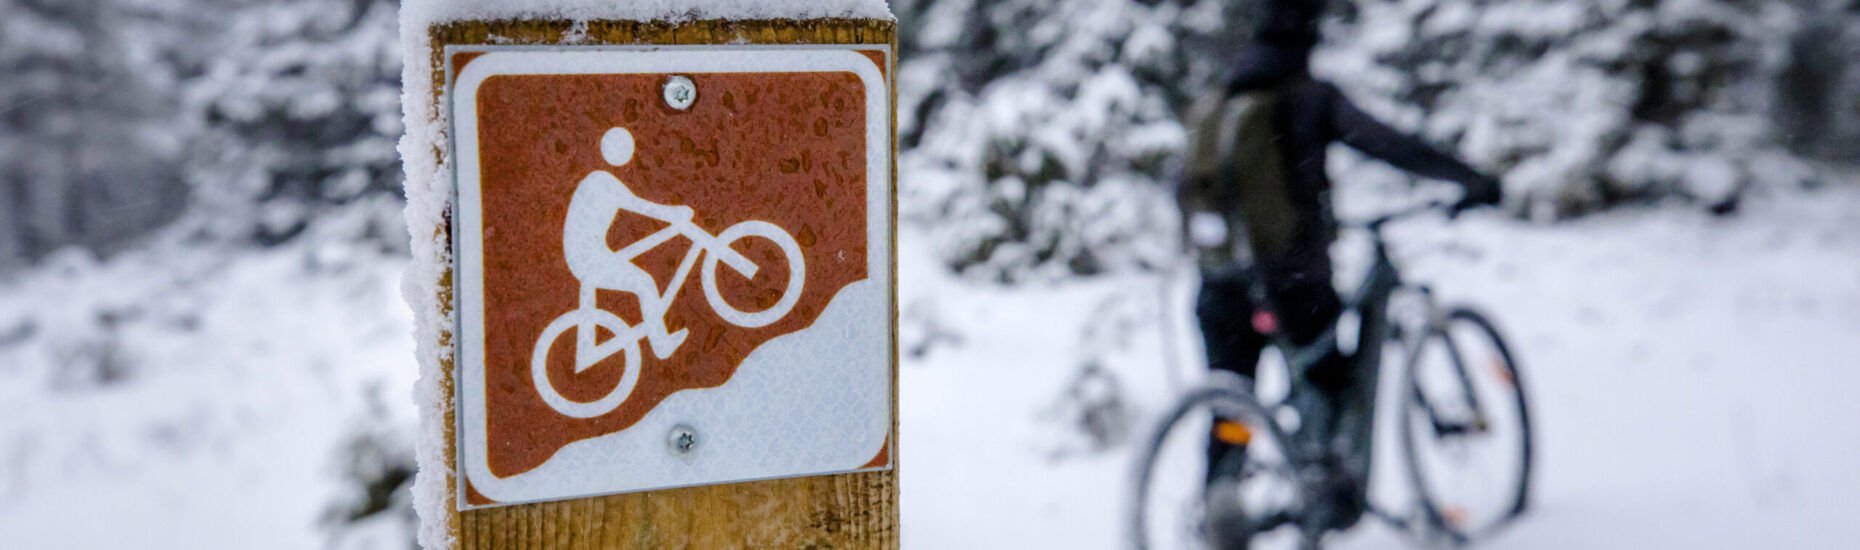 Lähikuvassa maastopyöräilyreitin merkki puupylvääseen ruuvattuna. Taustalla maastopyöräilijä taluttamassa pyöräänsä. Luminen talvinen kuva.